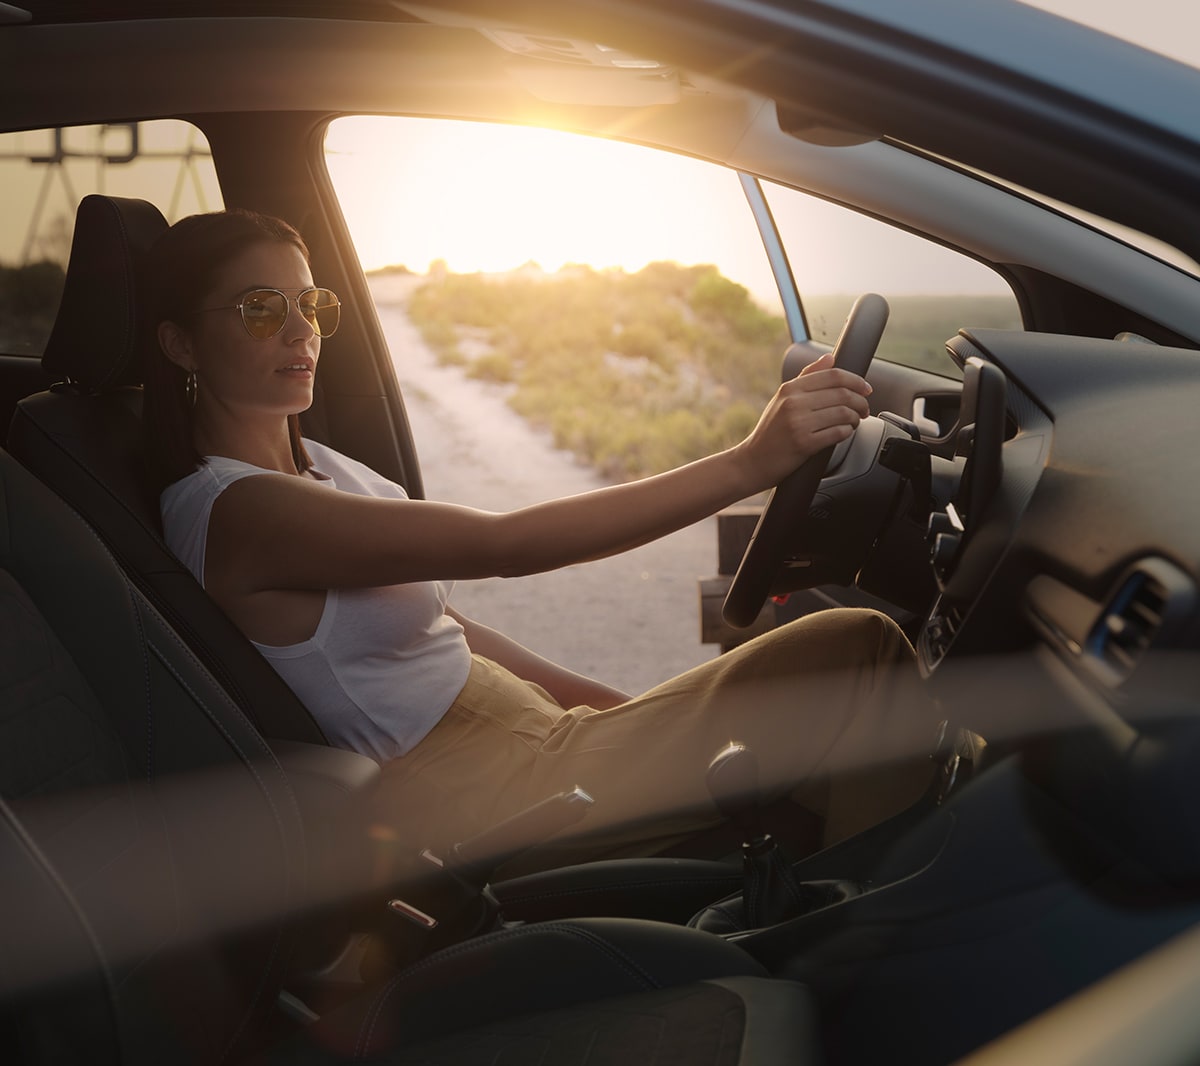 Ford Fiesta. Vue intérieure. Une femme est assise sur le siège conducteur avec la porte ouverte de son côté. Un coucher de soleil à l’arrière-plan.